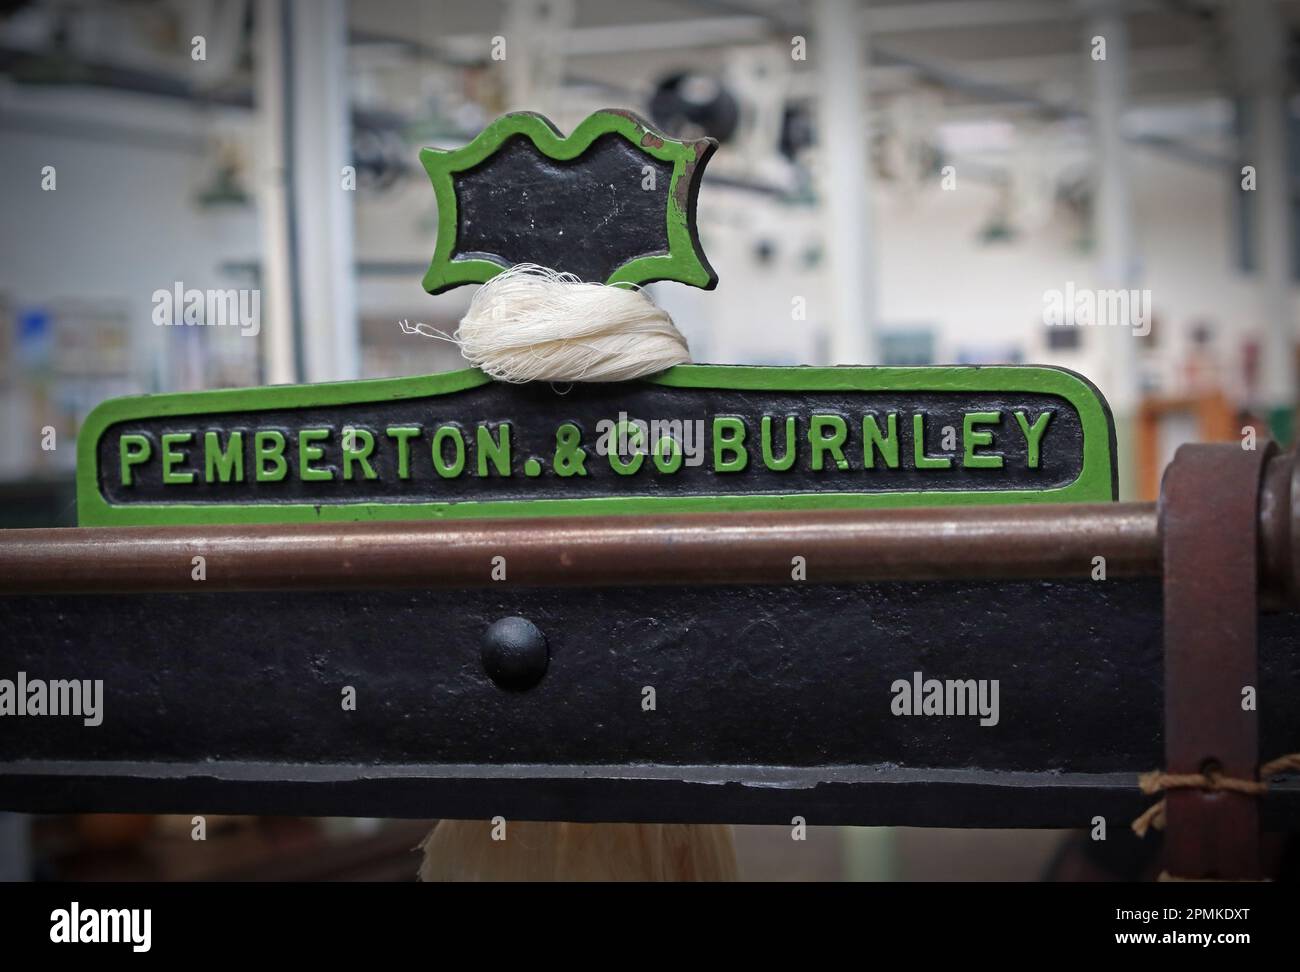 Machine de traitement et de fabrication du coton, par Pemberton & Co, Burnley Banque D'Images